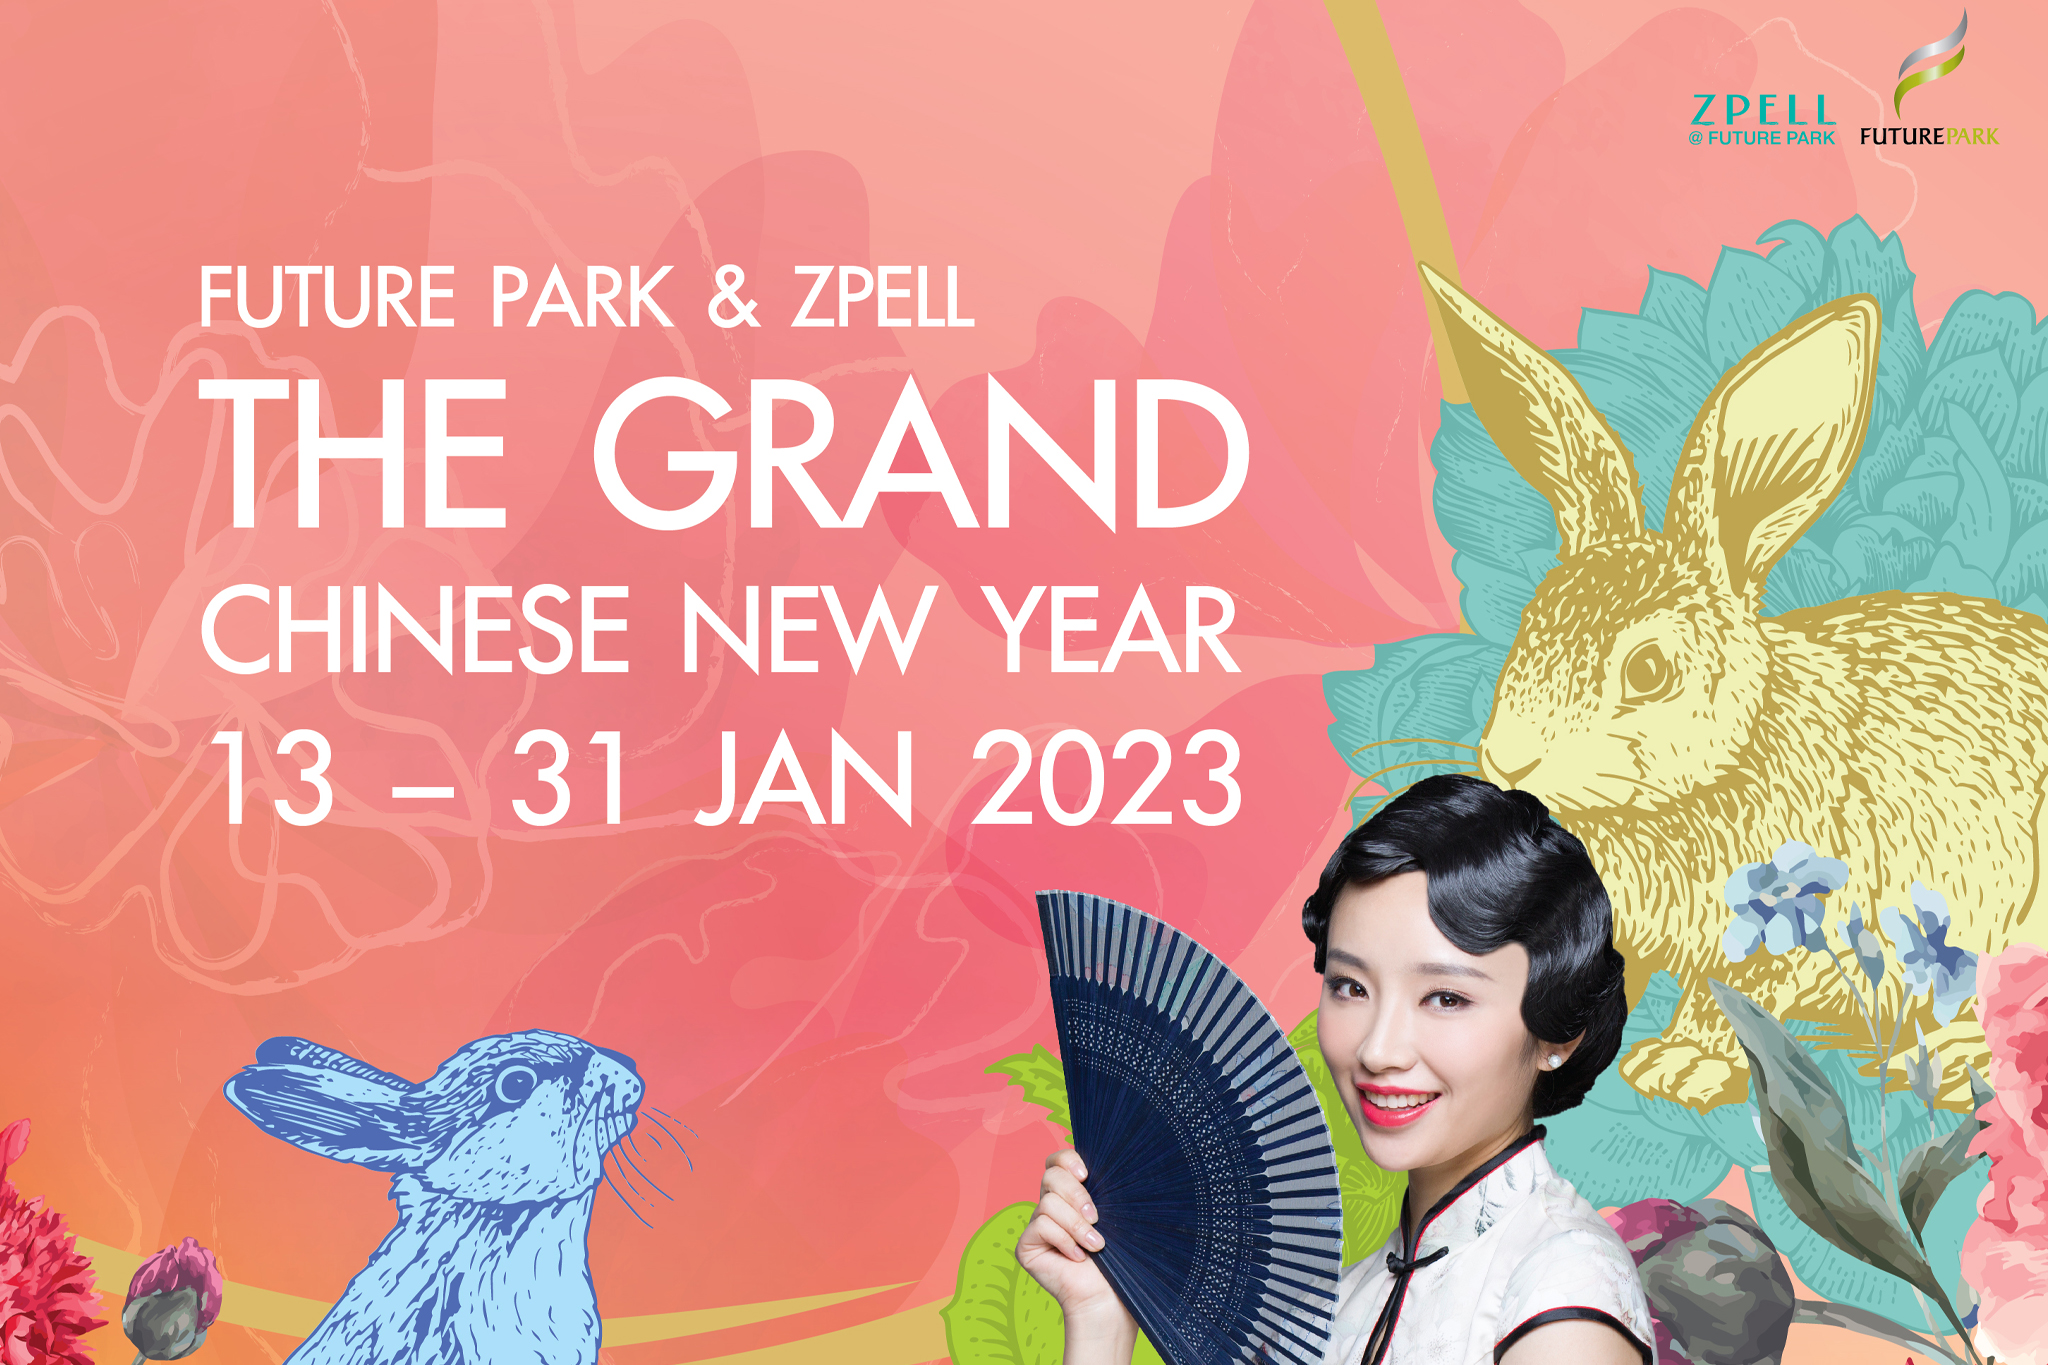  “ศูนย์การค้าฟิวเจอร์พาร์คและสเปลล์” ฉลองรับตรุษจีนปีกระต่ายทอง เสิร์ฟแคมเปญ “Future Park & Zpell The Grand Chinese New Year 2023”  จัดเต็มมอบโชคทองสุดเฮงทุกวัน